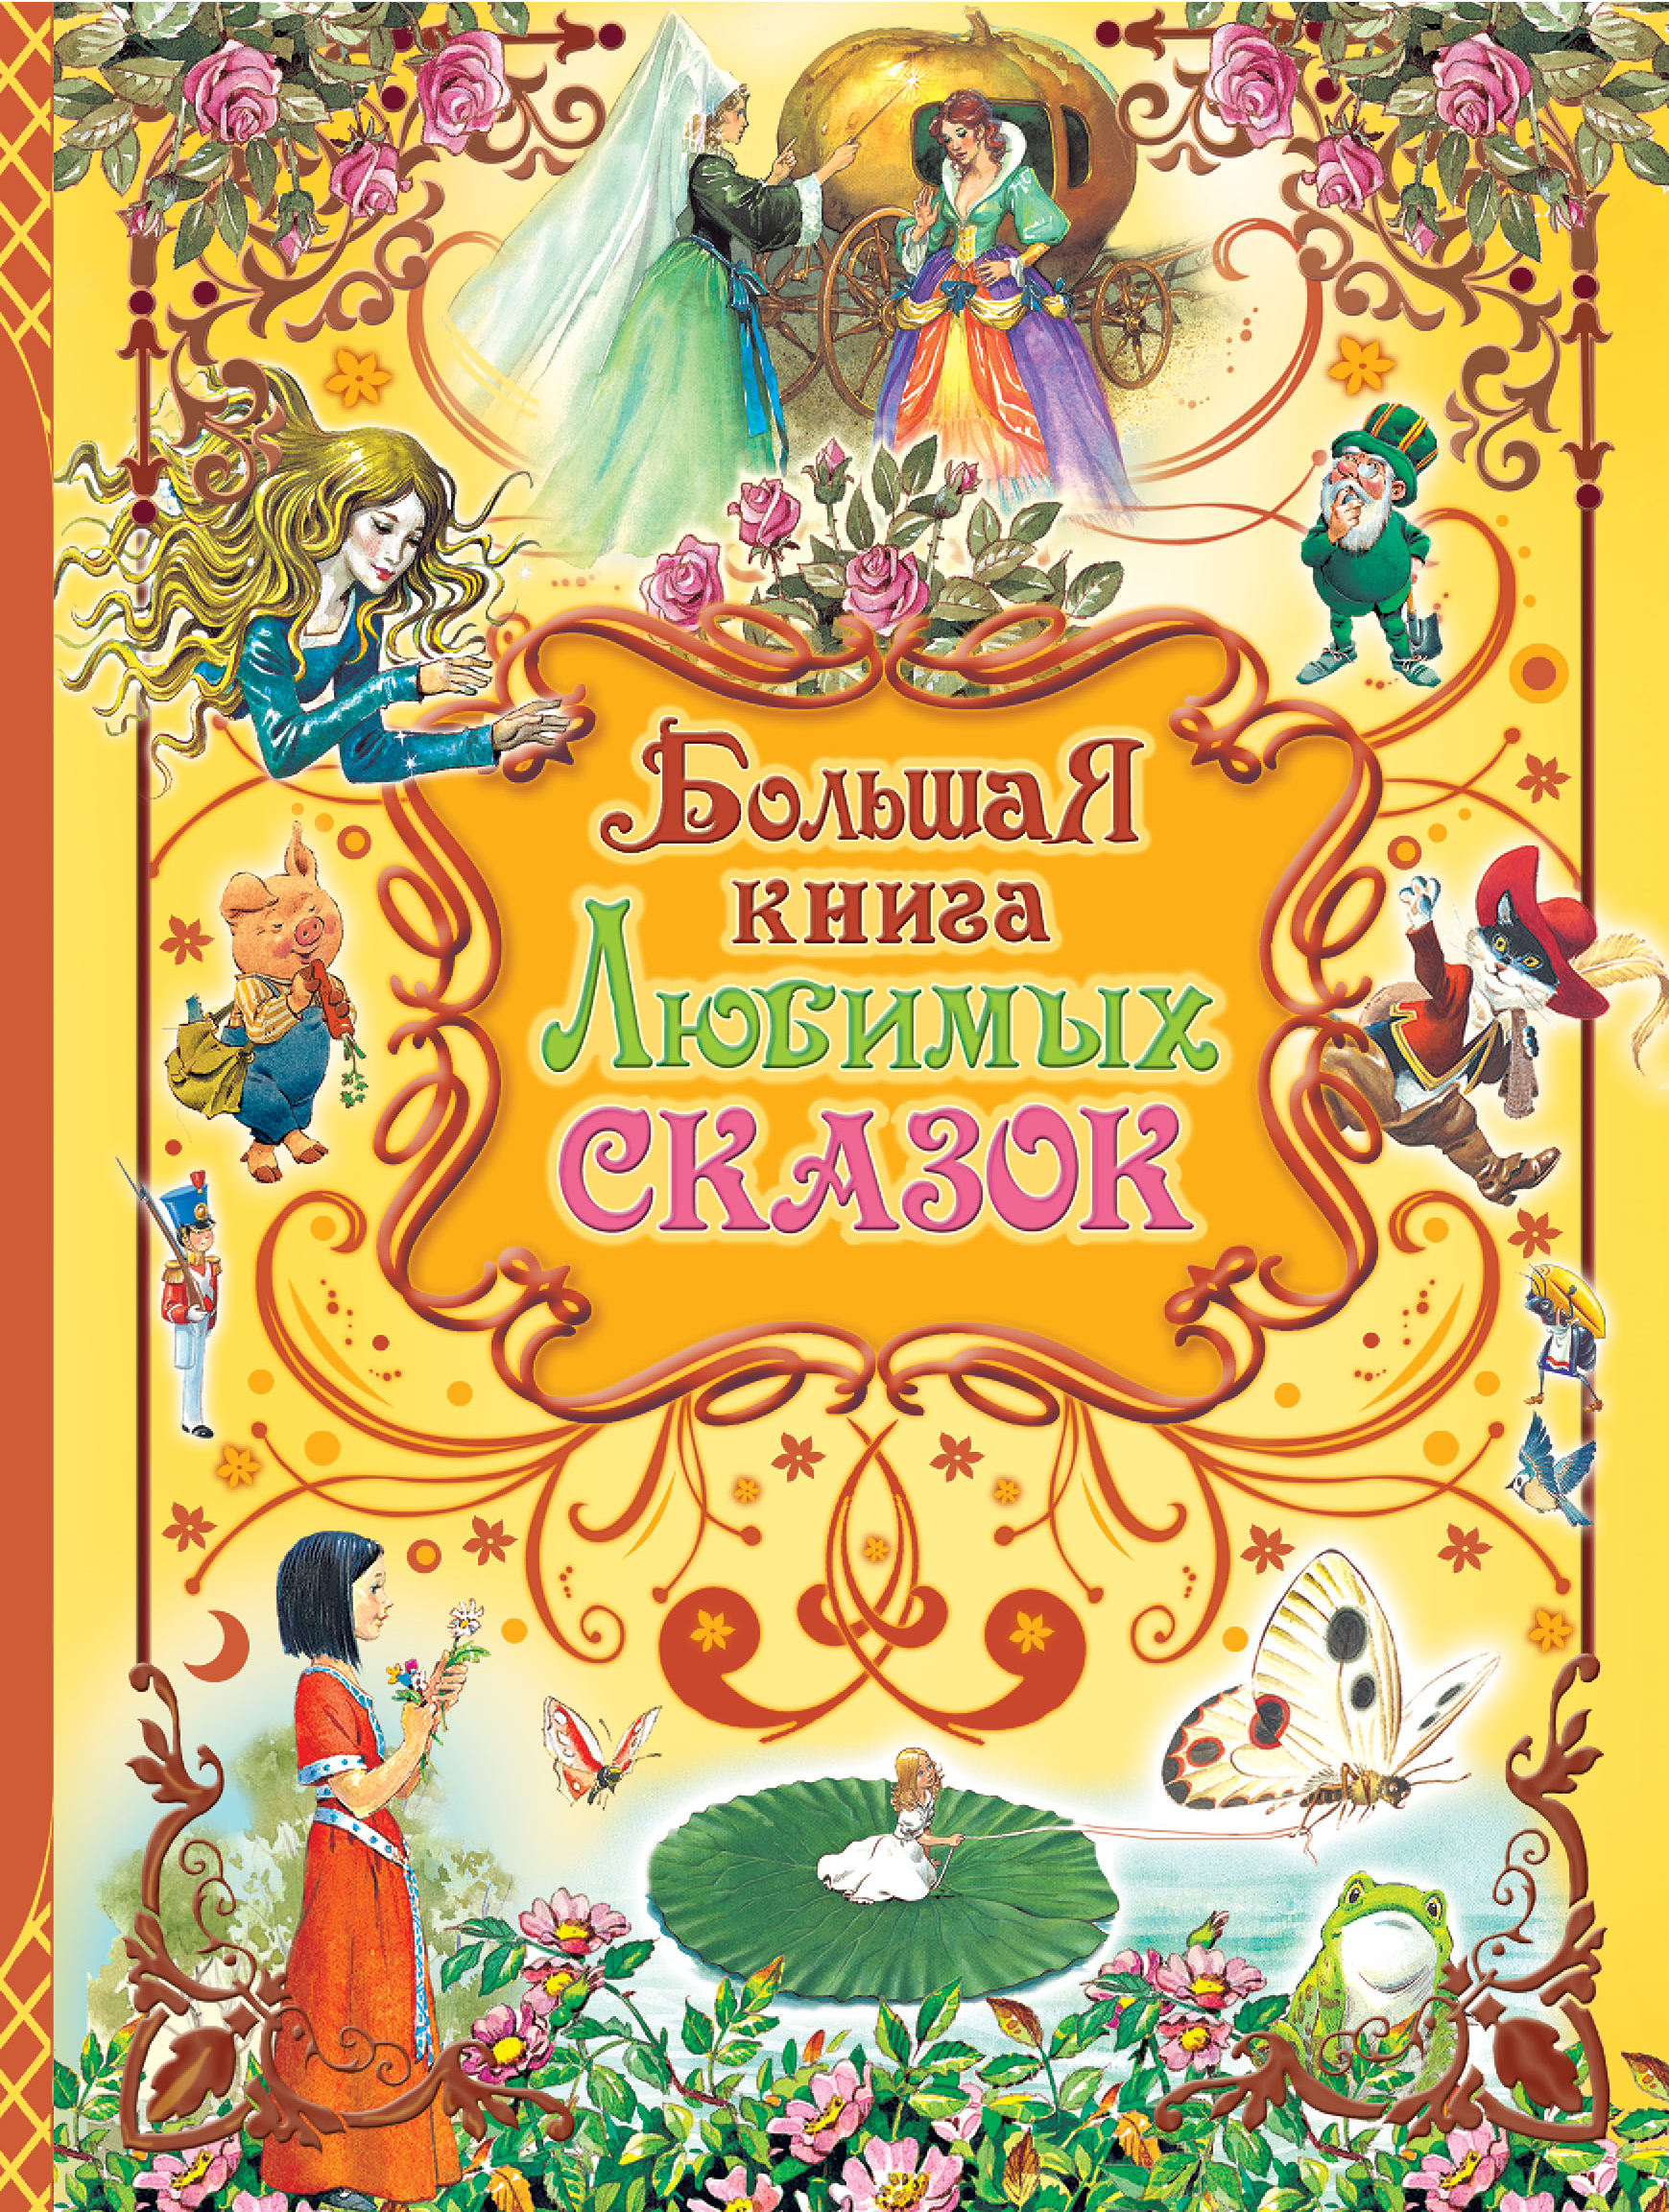 Большая книга любимых сказок родионова н ред книга любимых сказок русская классика